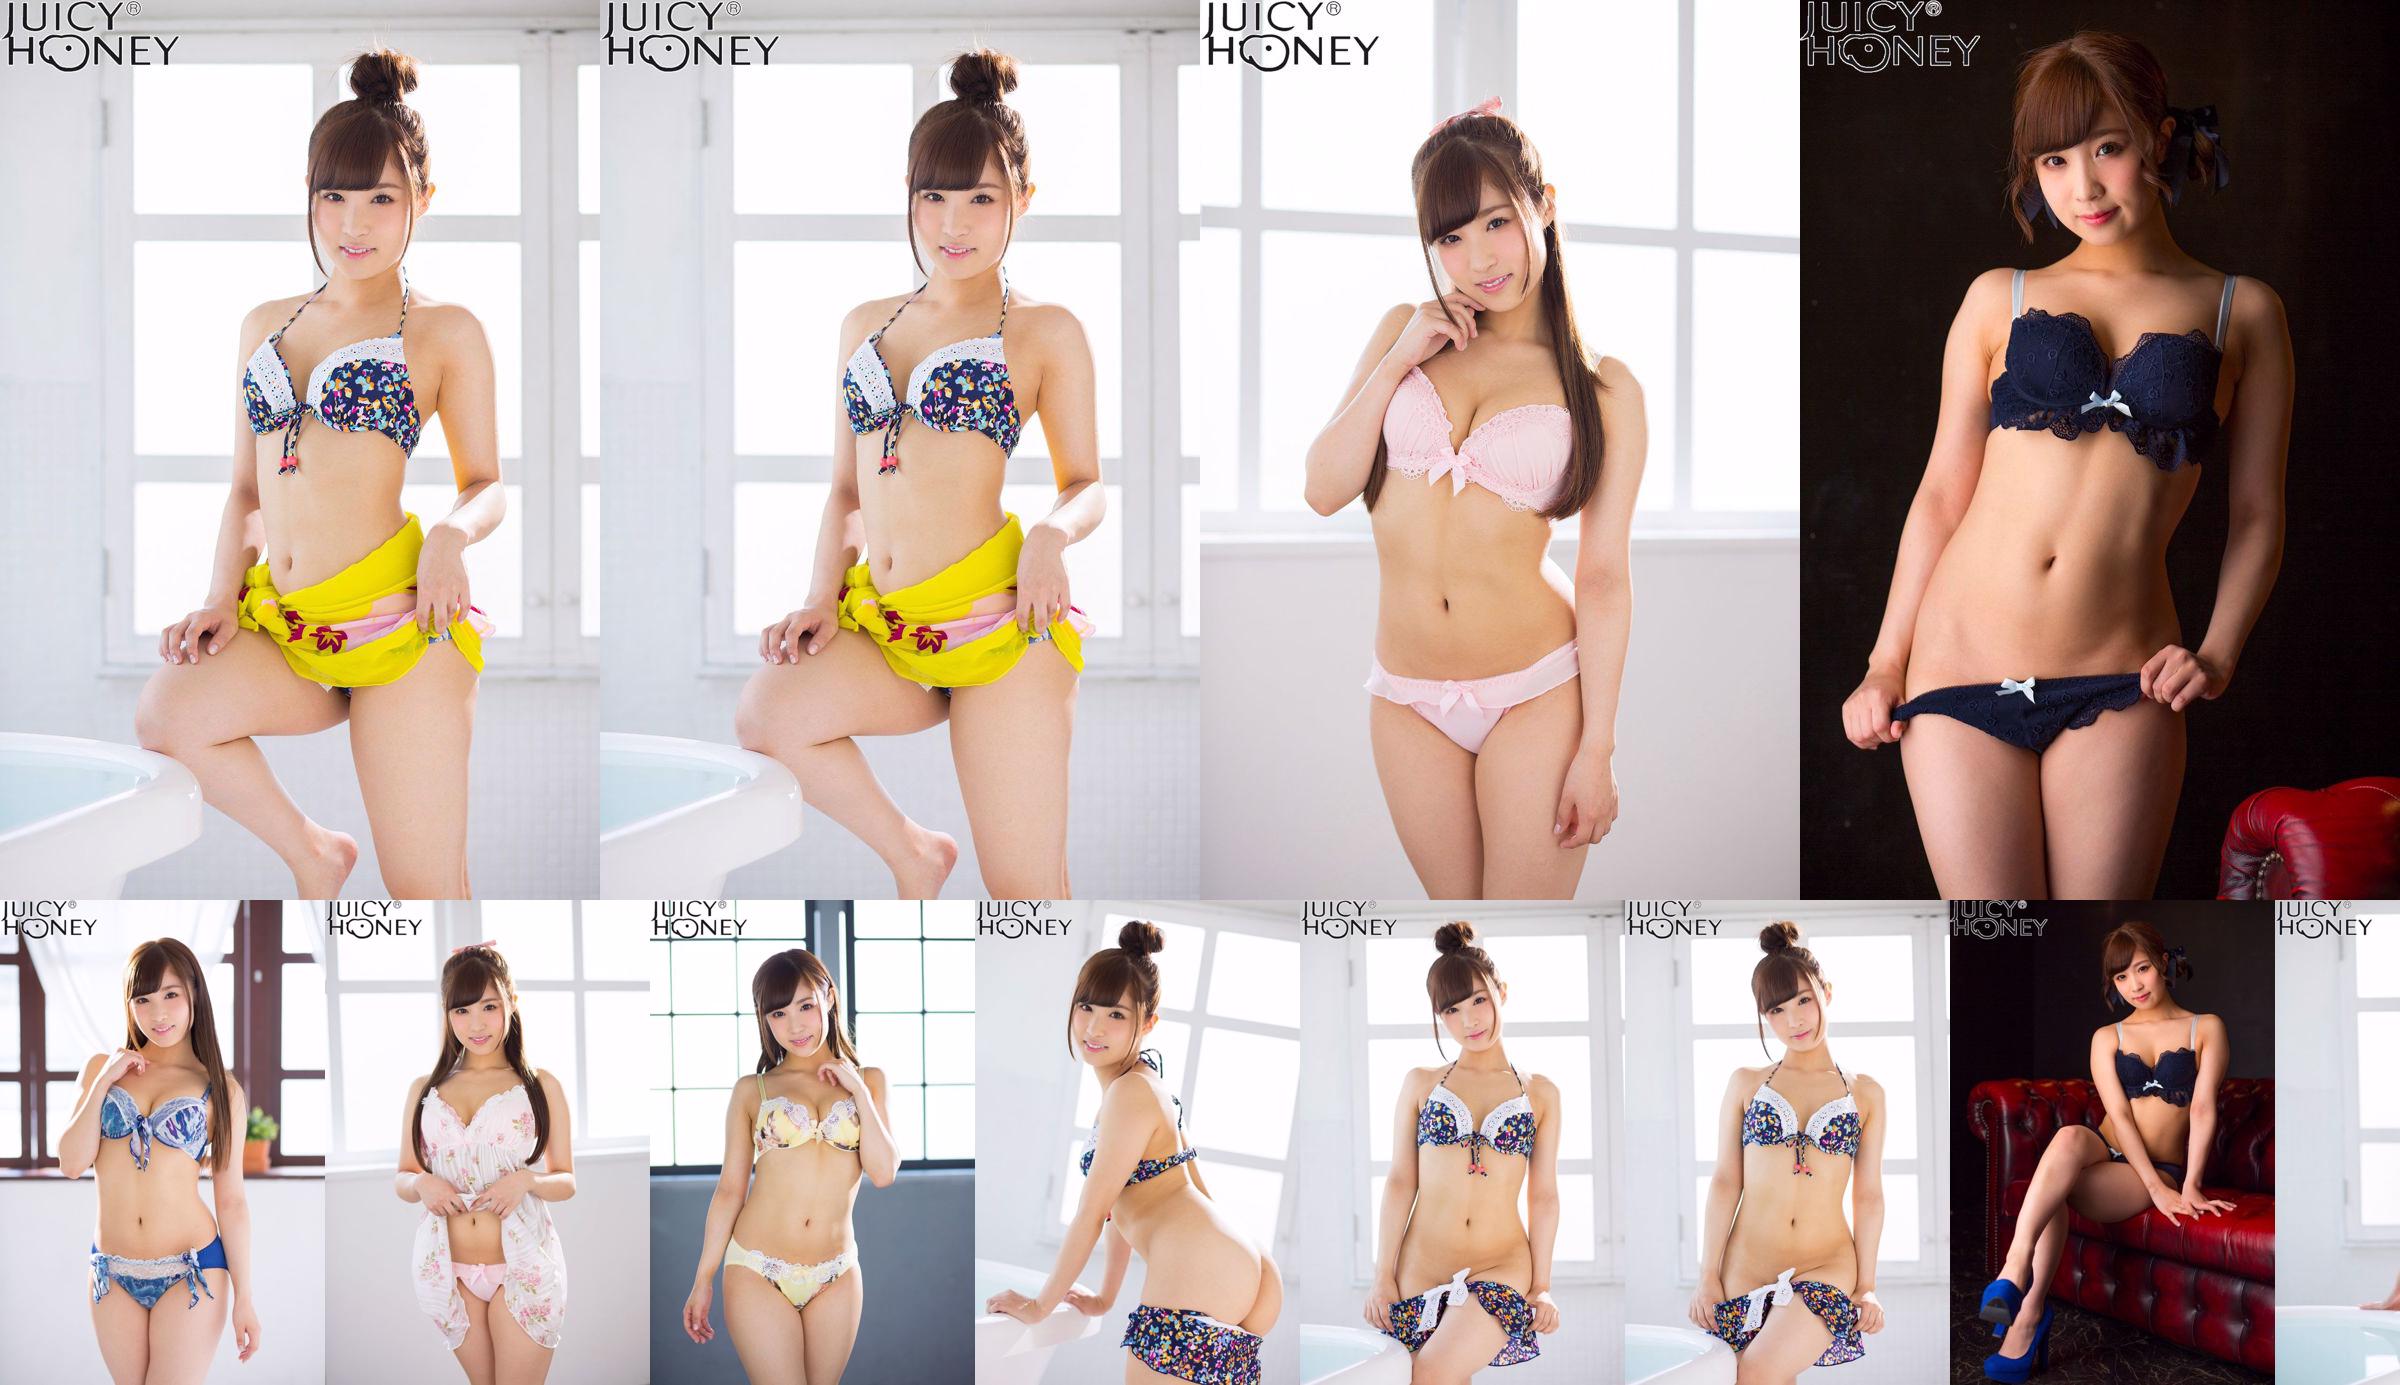 [X-City] Juicy Honey jh220 Noa Eikawa Noa Eikawa / Noa Eikawa No.cdddc5 Página 4